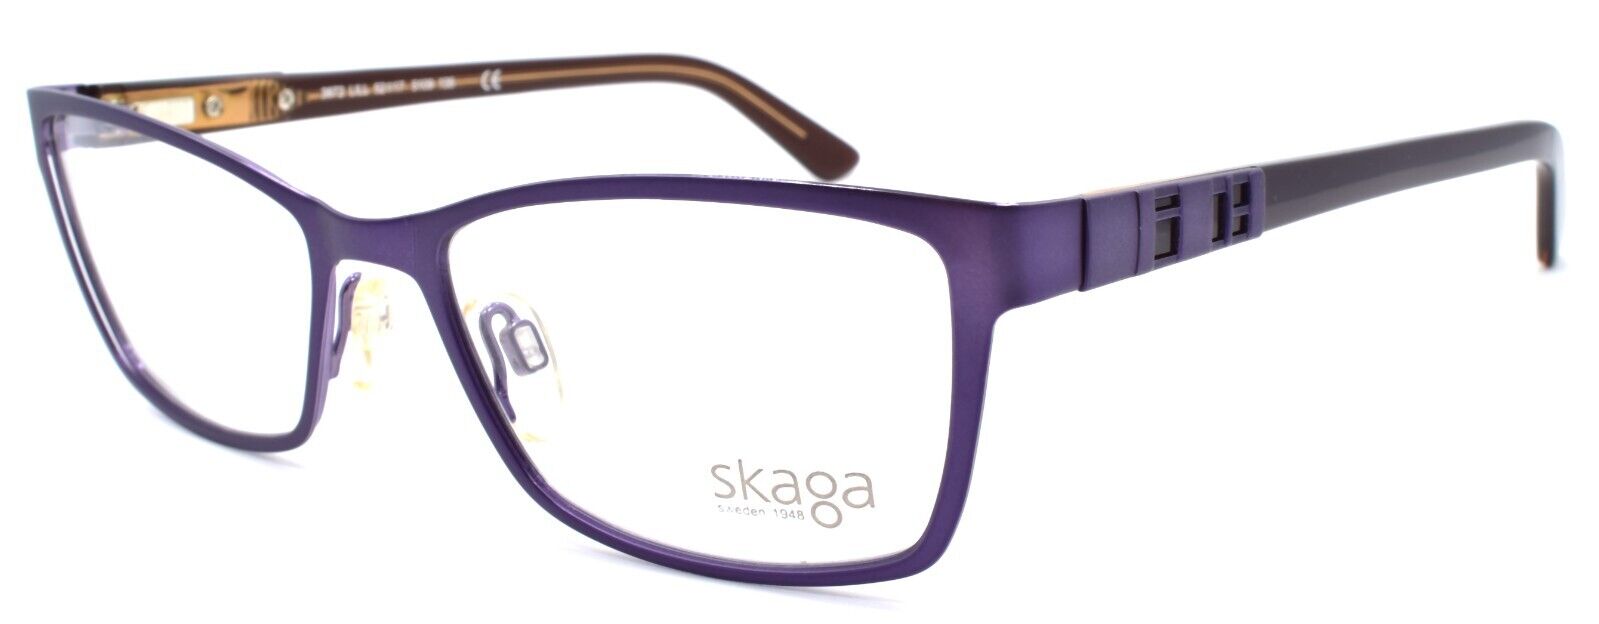 1-Skaga 3872 Lill 5109 Women's Eyeglasses Frames 52-17-135 Violet-Does not apply-IKSpecs